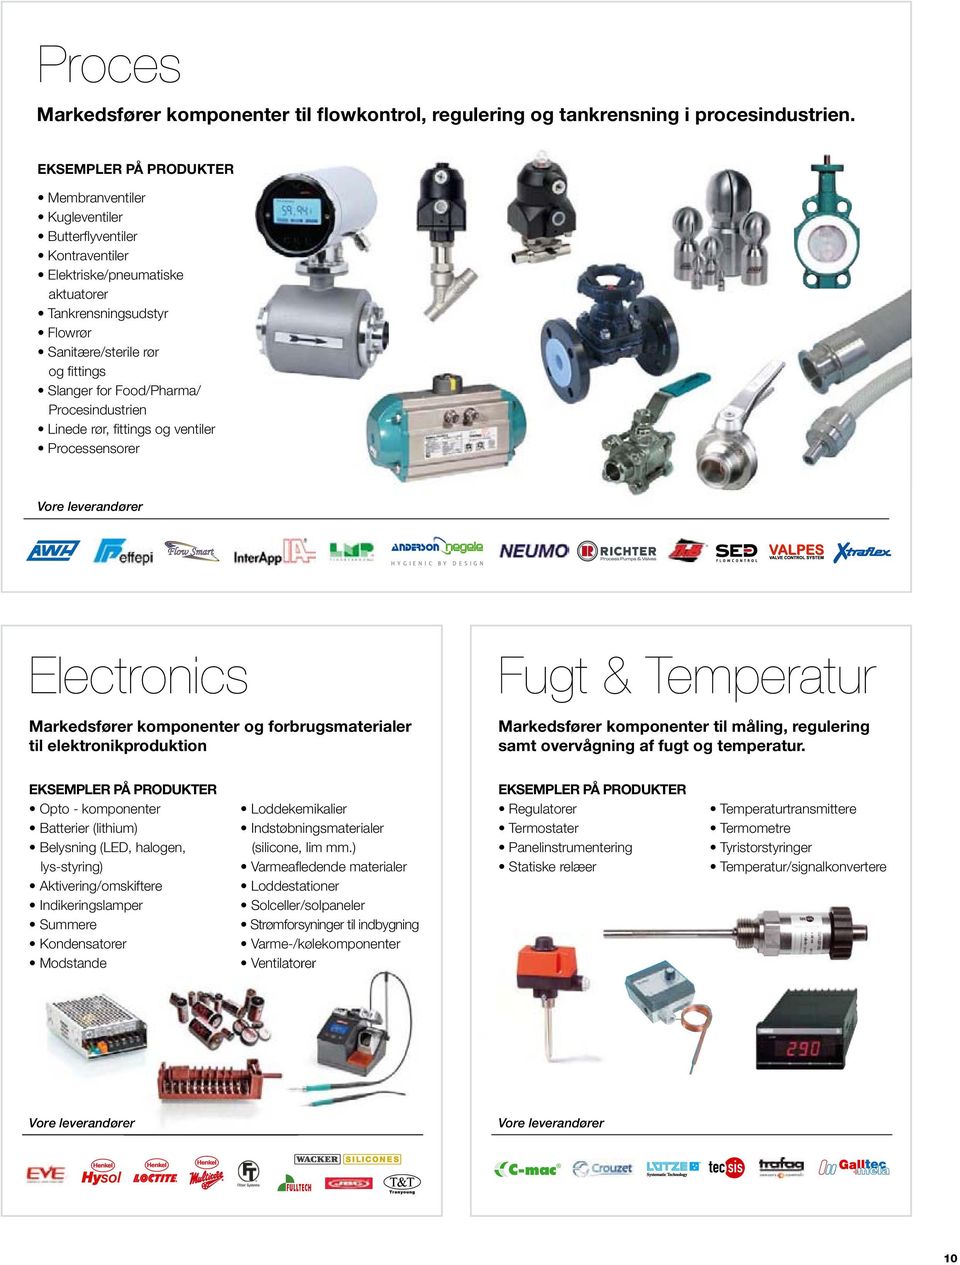 Linede rør, fittings og ventiler Processensorer Electronics Markedsfører komponenter og forbrugsmaterialer til elektronikproduktion Fugt & Temperatur Markedsfører komponenter til måling, regulering